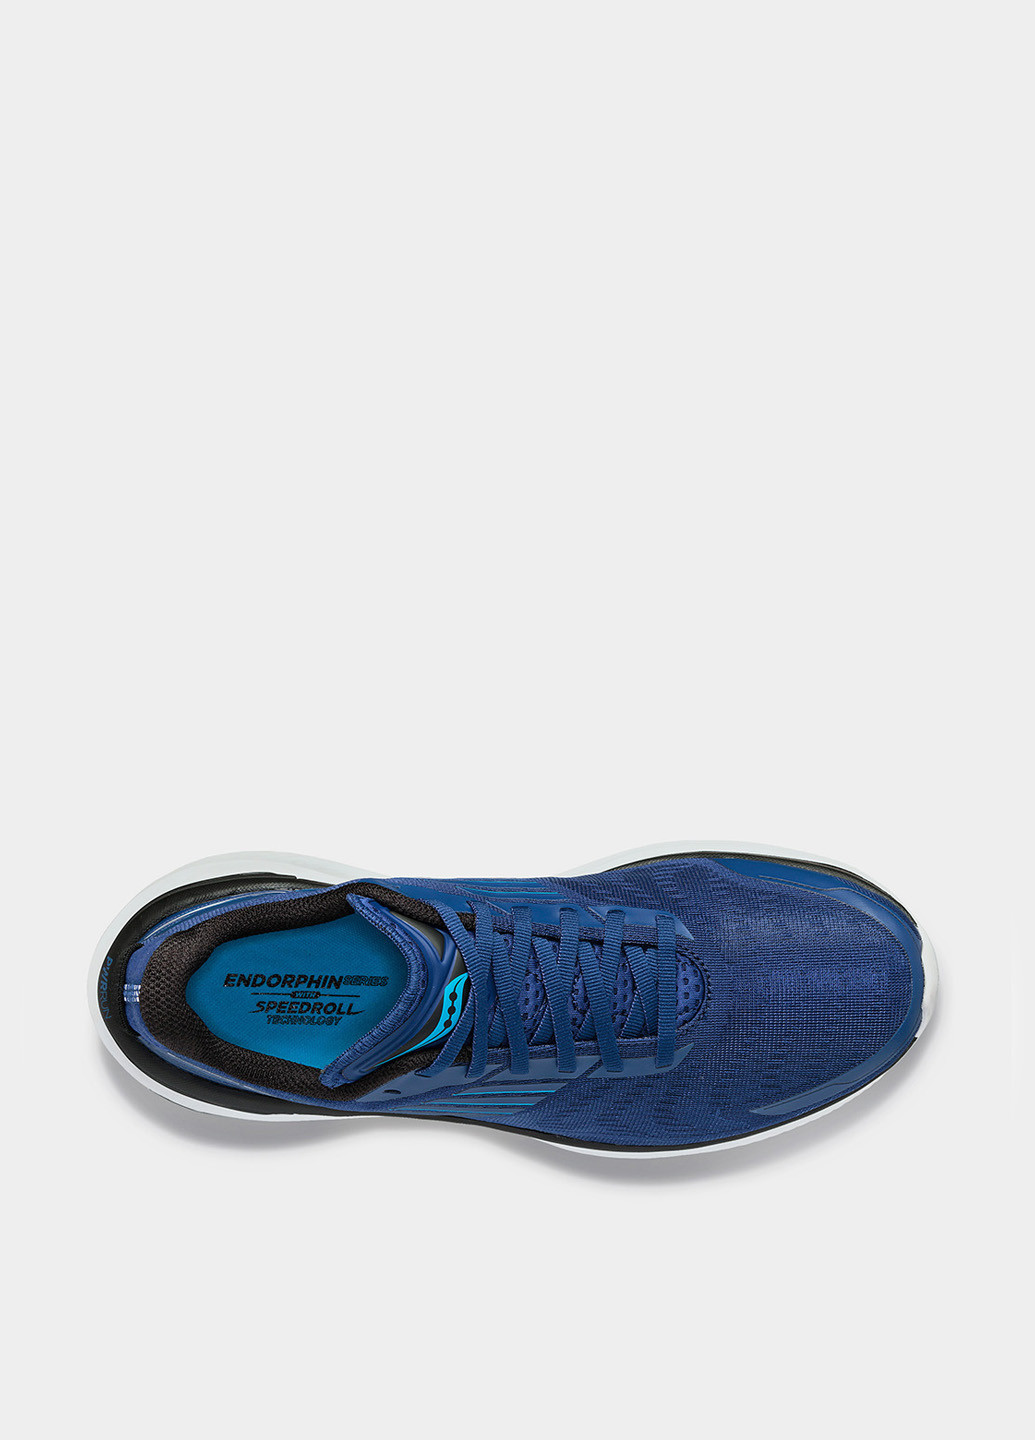 Синие всесезонные кроссовки Saucony ENDORPHIN SHIFT 3